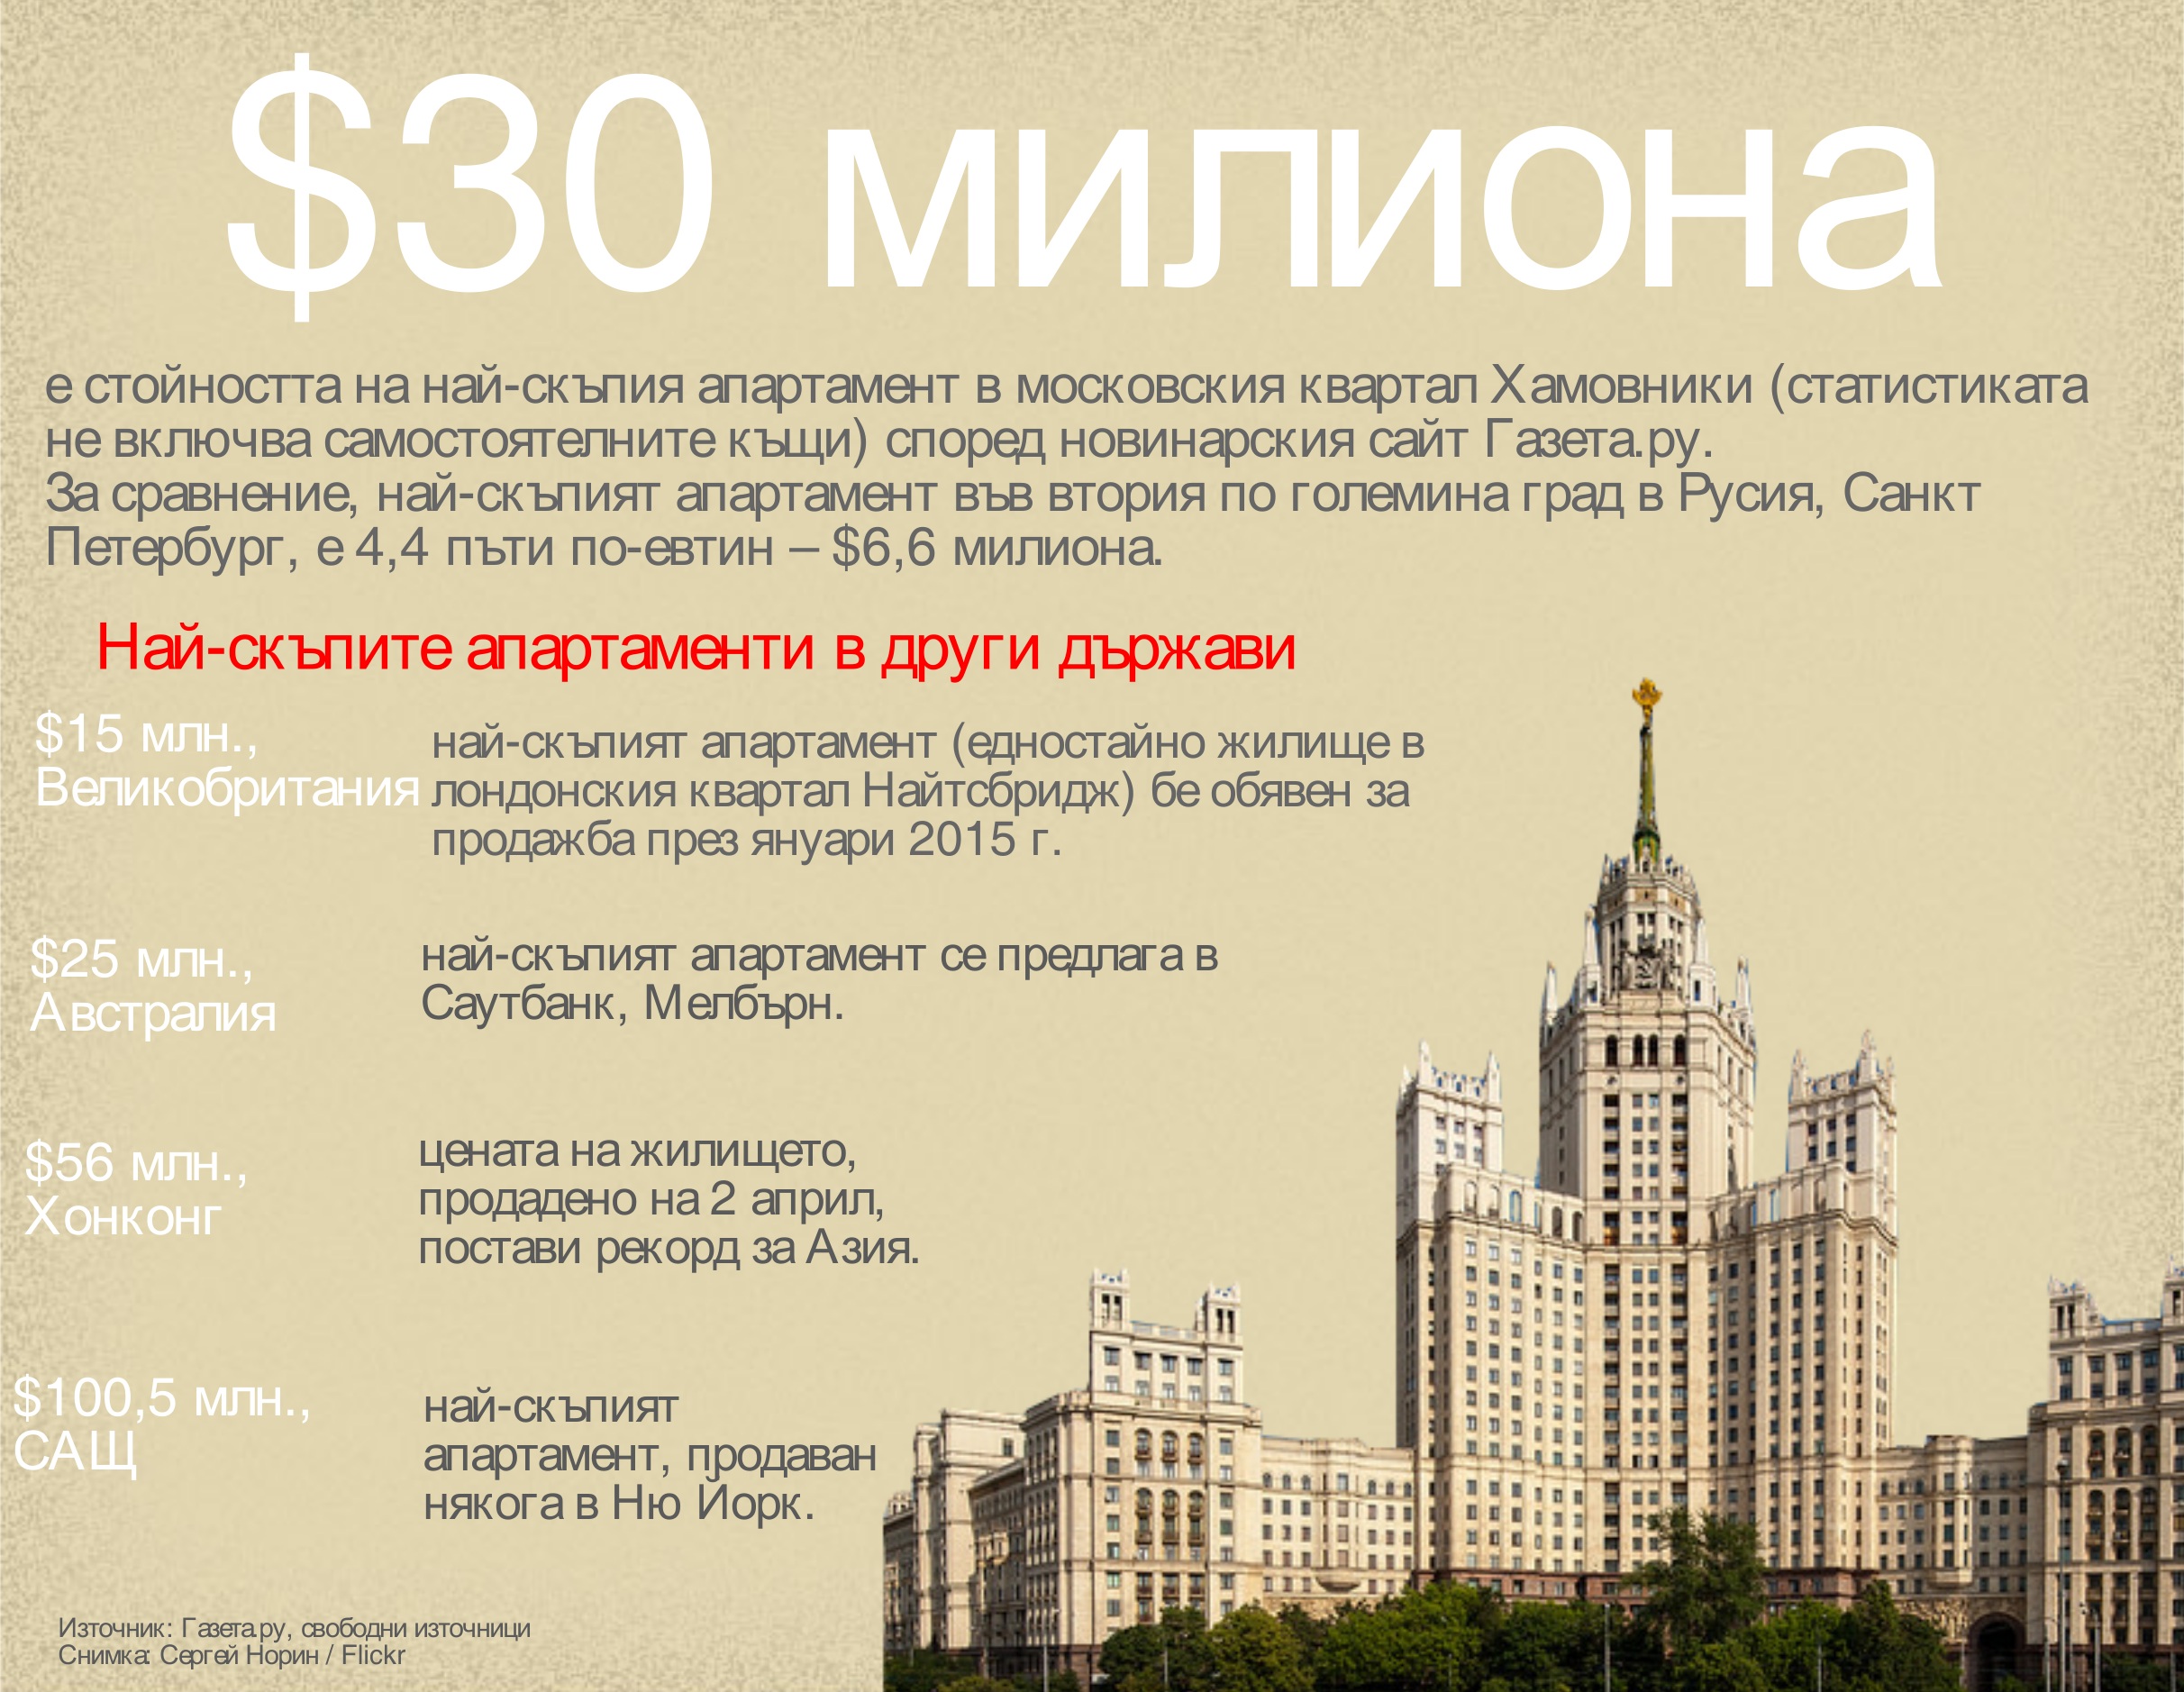 Ето каква е цената на най-скъпия апартамент в руската столица.